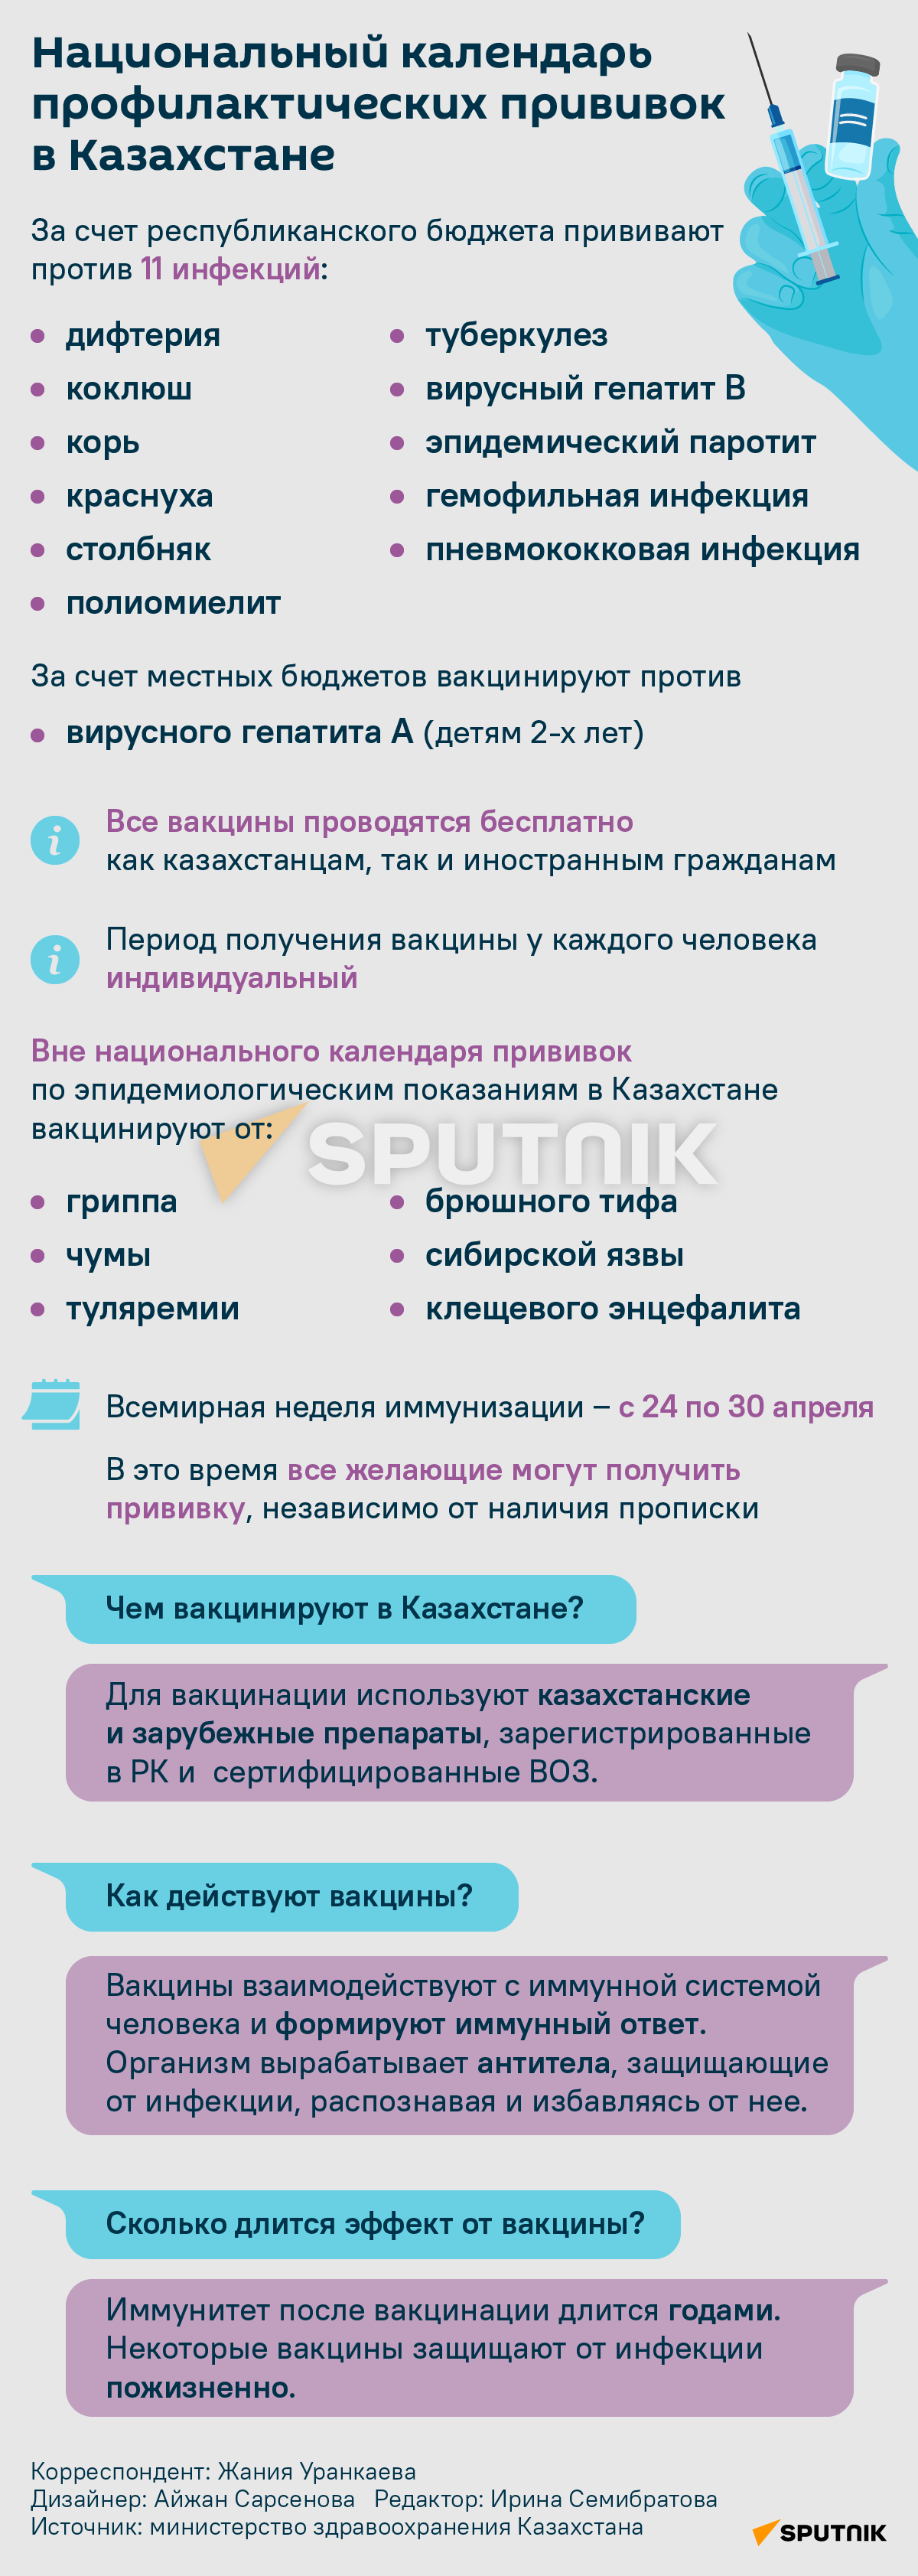 Календарь профилактических прививок в Казахстане - Sputnik Казахстан